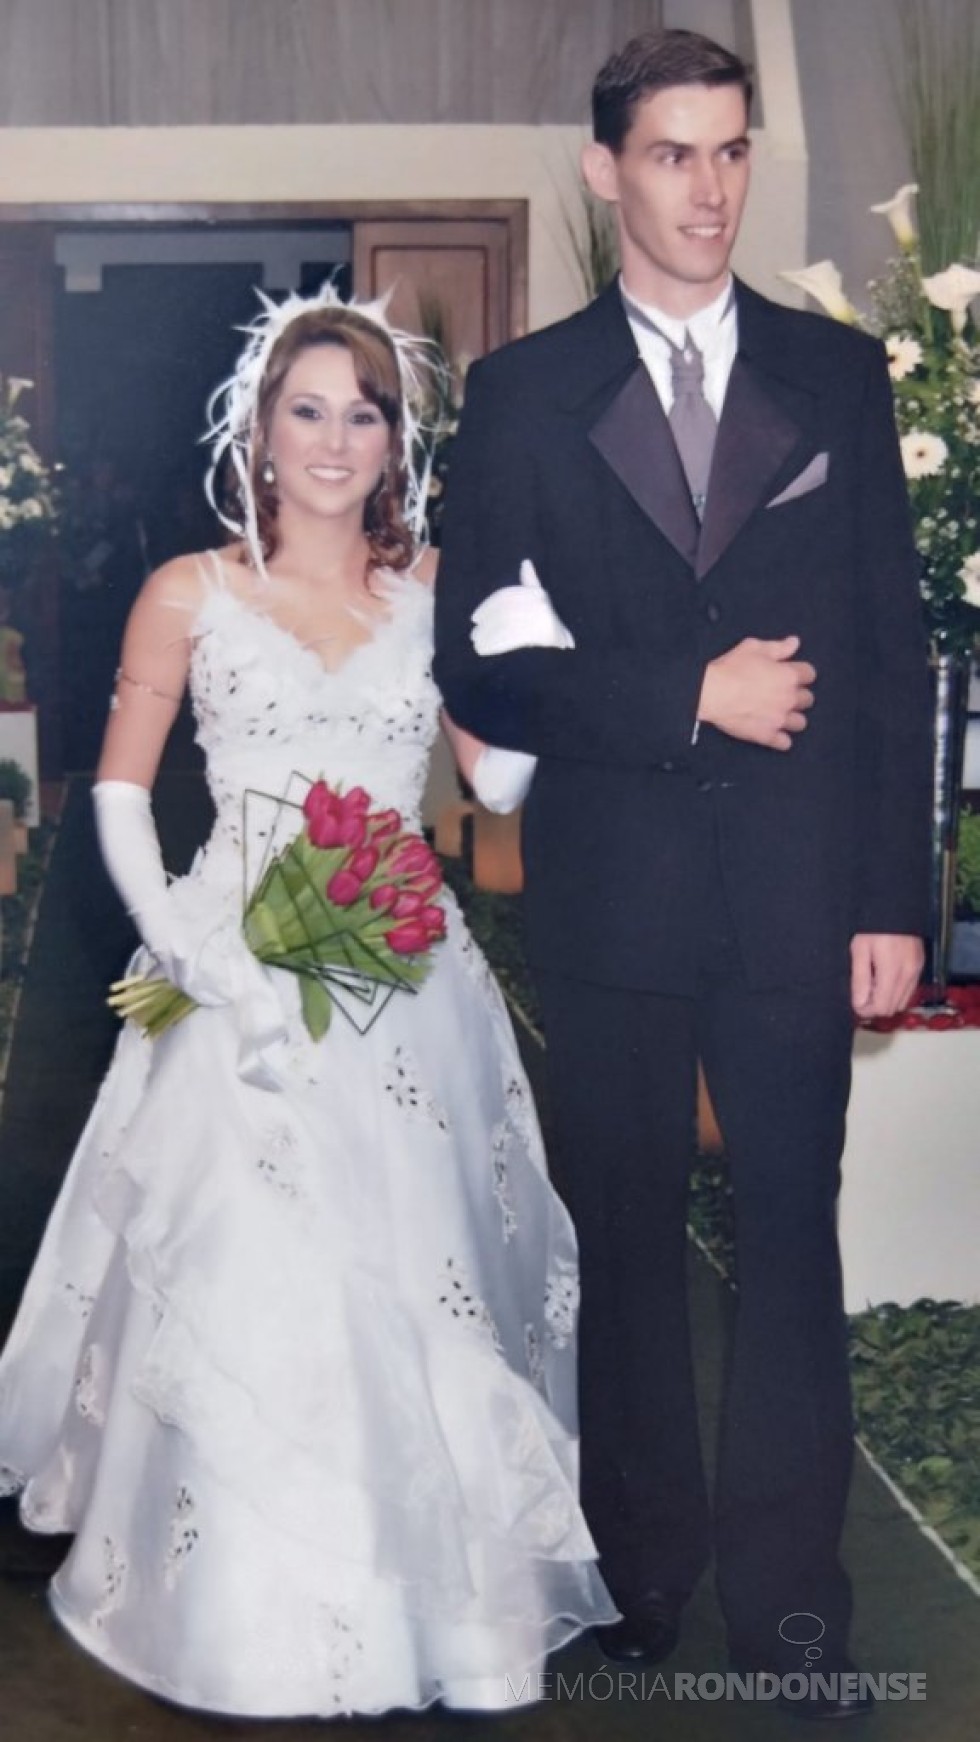 || Noivos Leila Sartori e Anderson Bento Maria que se casaram em começo de maio de 2008.
Imagem: Acervo pessoal - FOTO 19 - 